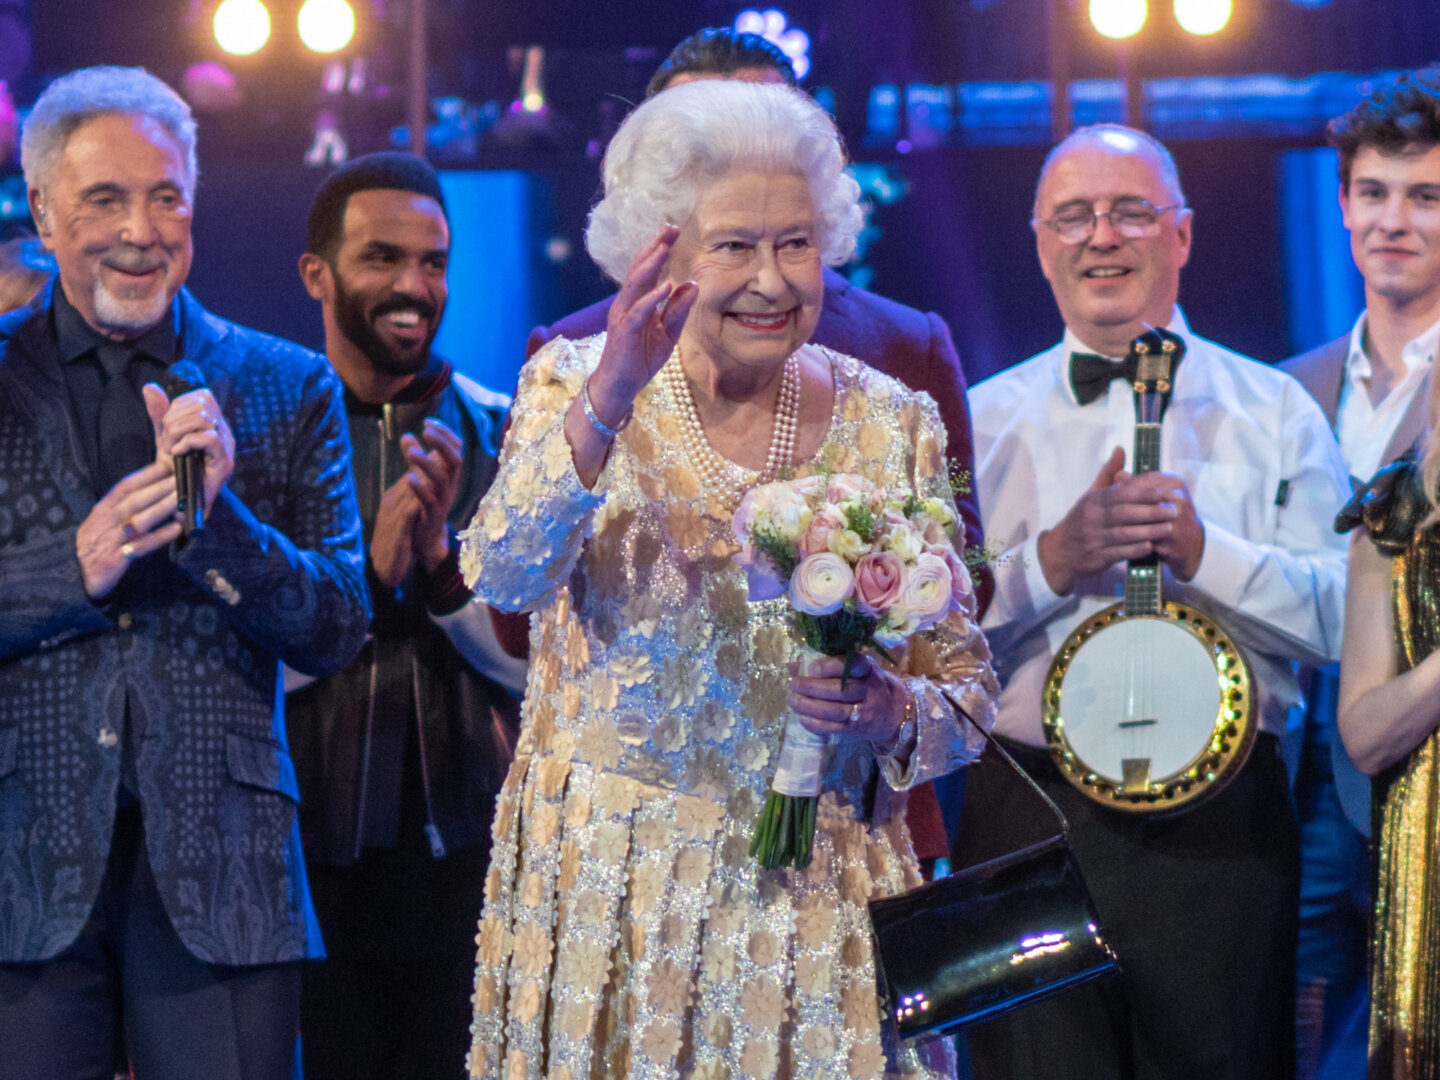 II. Erzsébet 2018-as születésnapi ünnepsége a Royal Albert Hallban - forrás: wikipedia